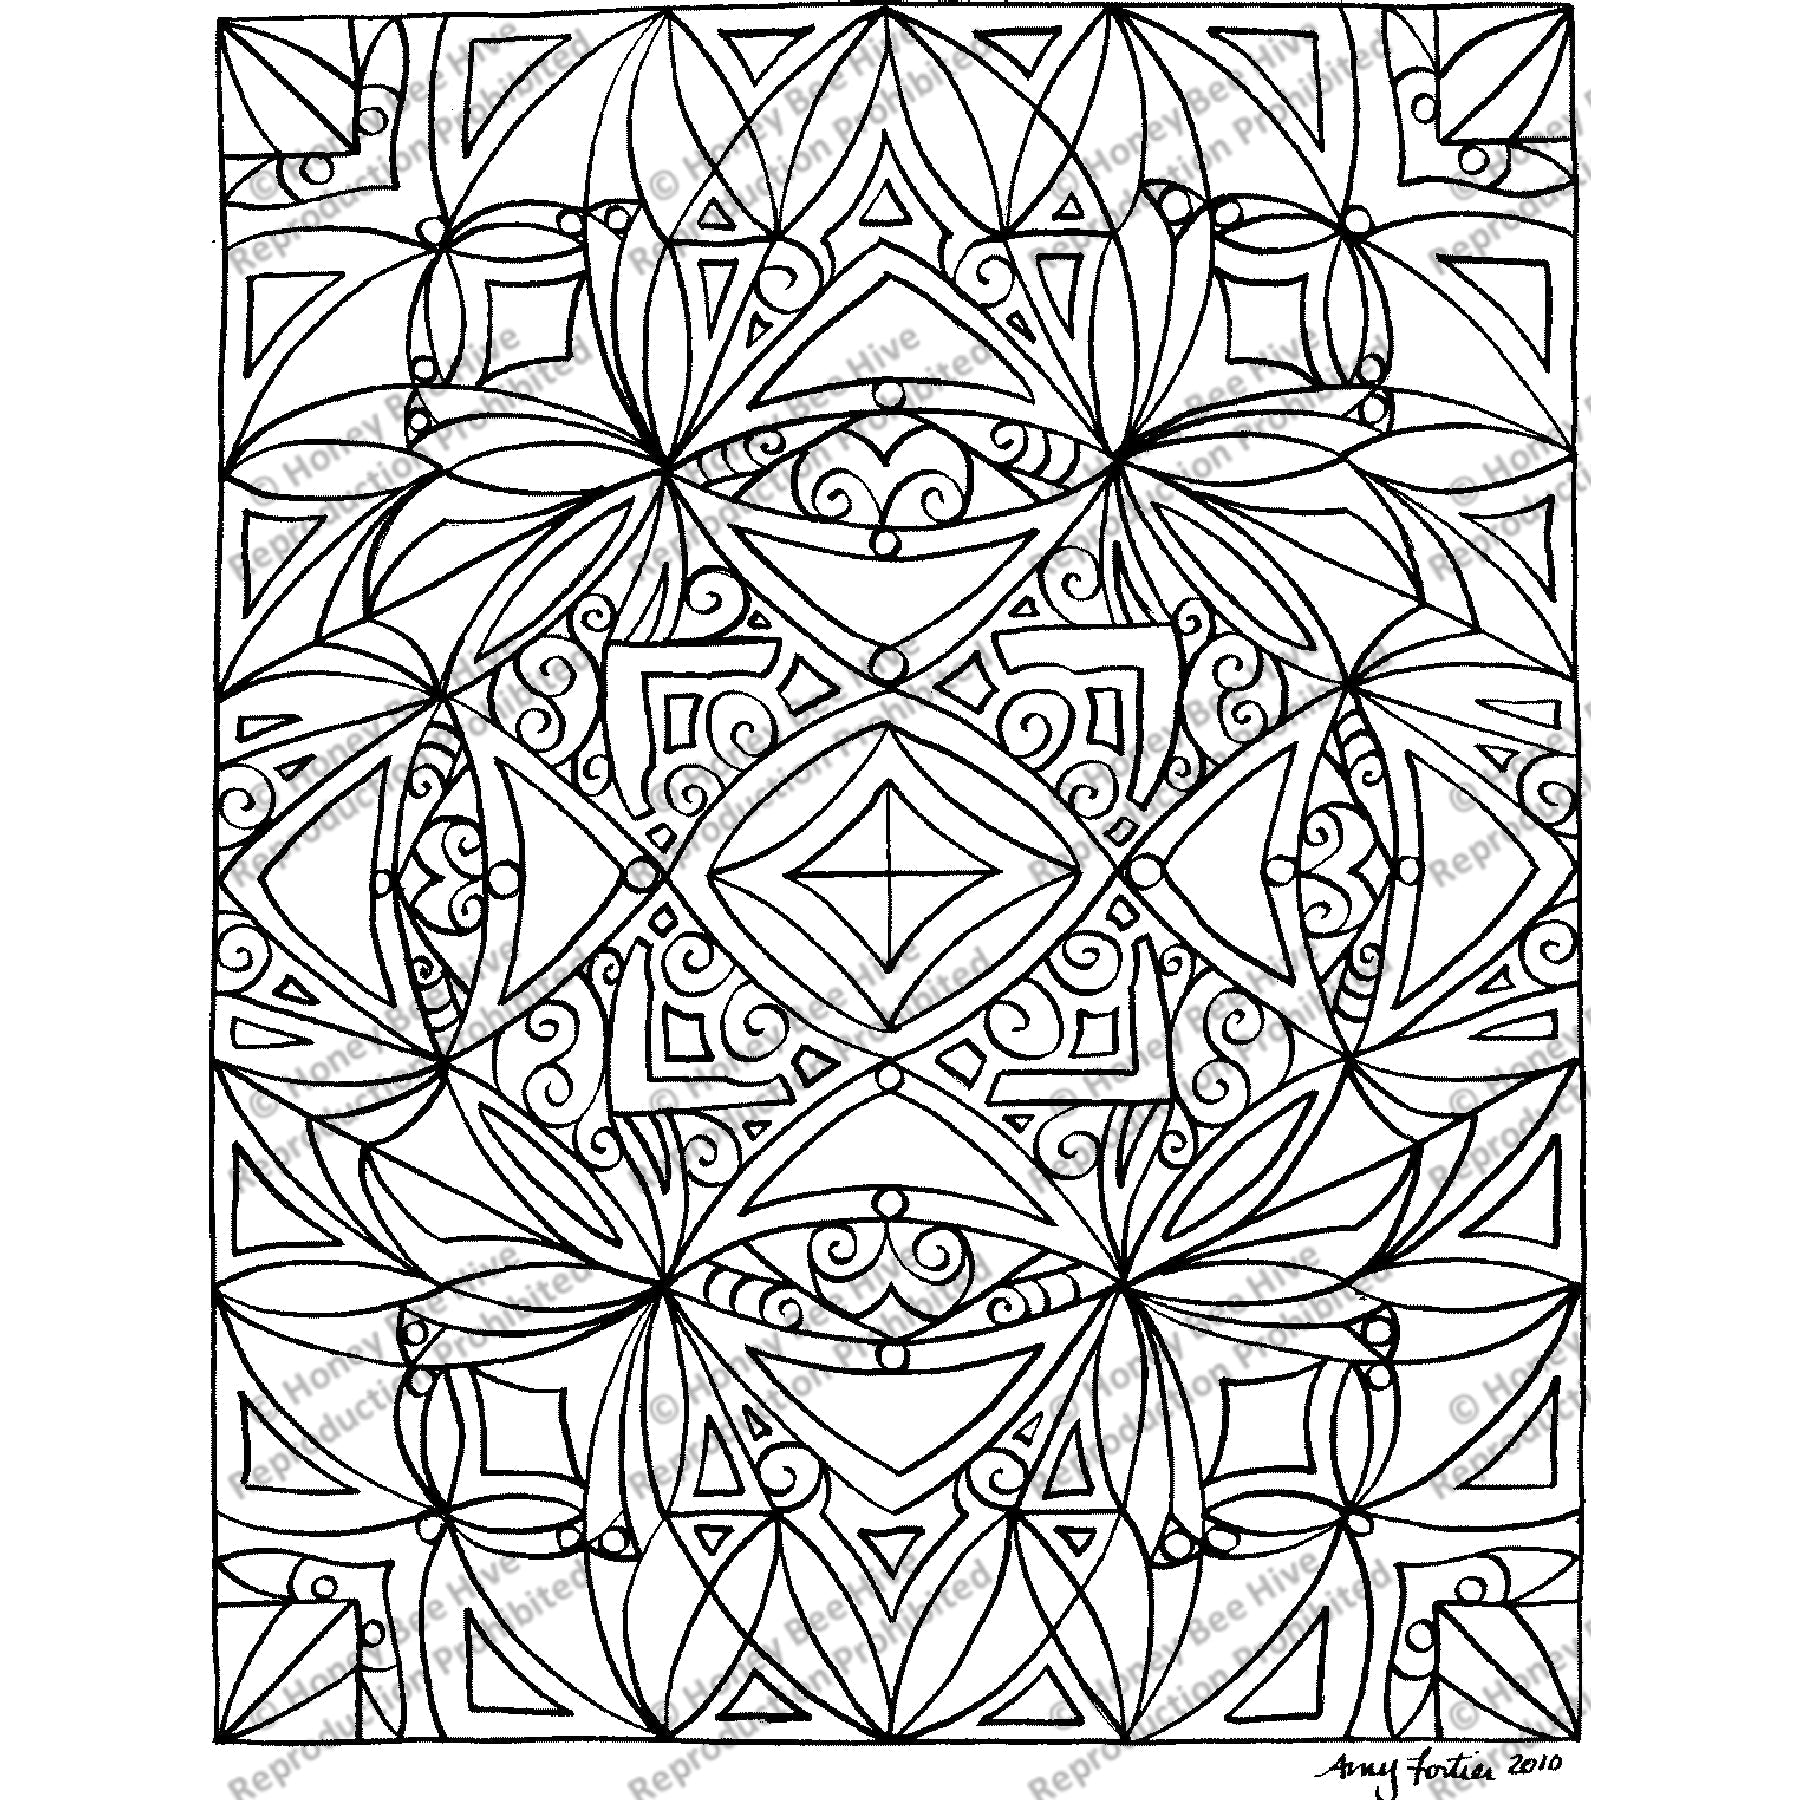 Chiroptera, rug hooking pattern